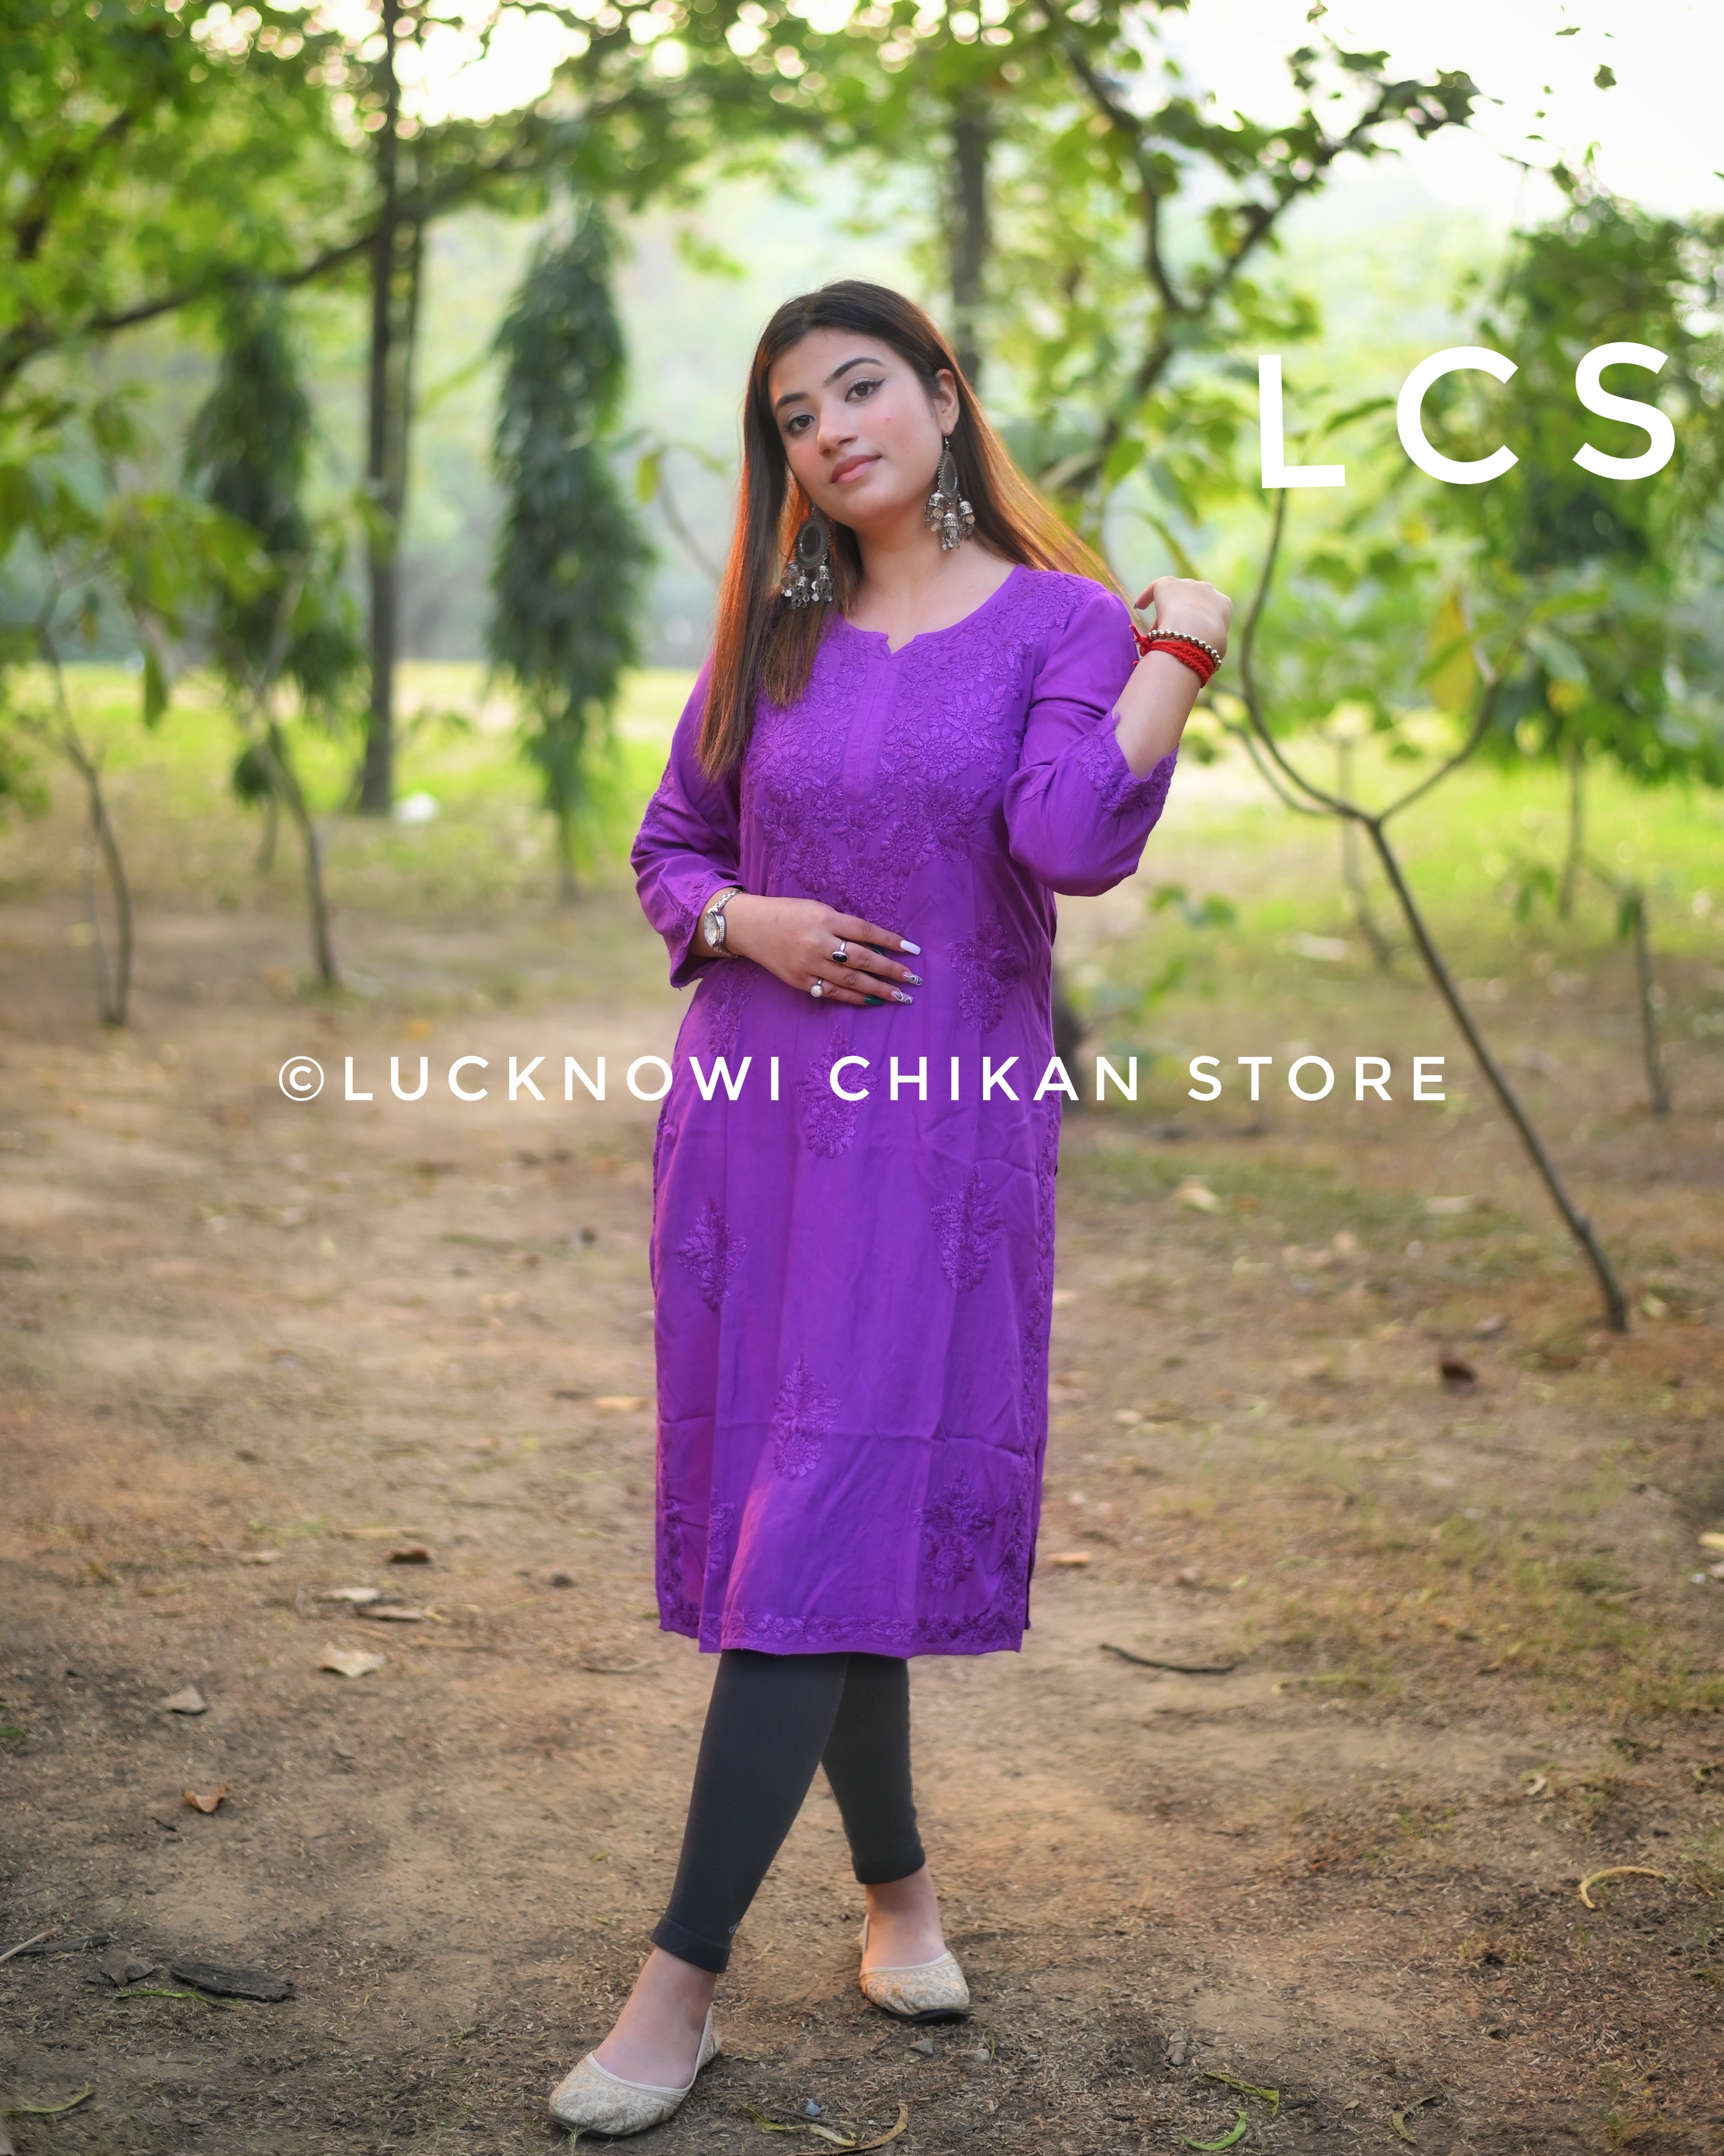 Lucknowi Chikan | Lucknow Chikan - Lucknowi Chikan Store